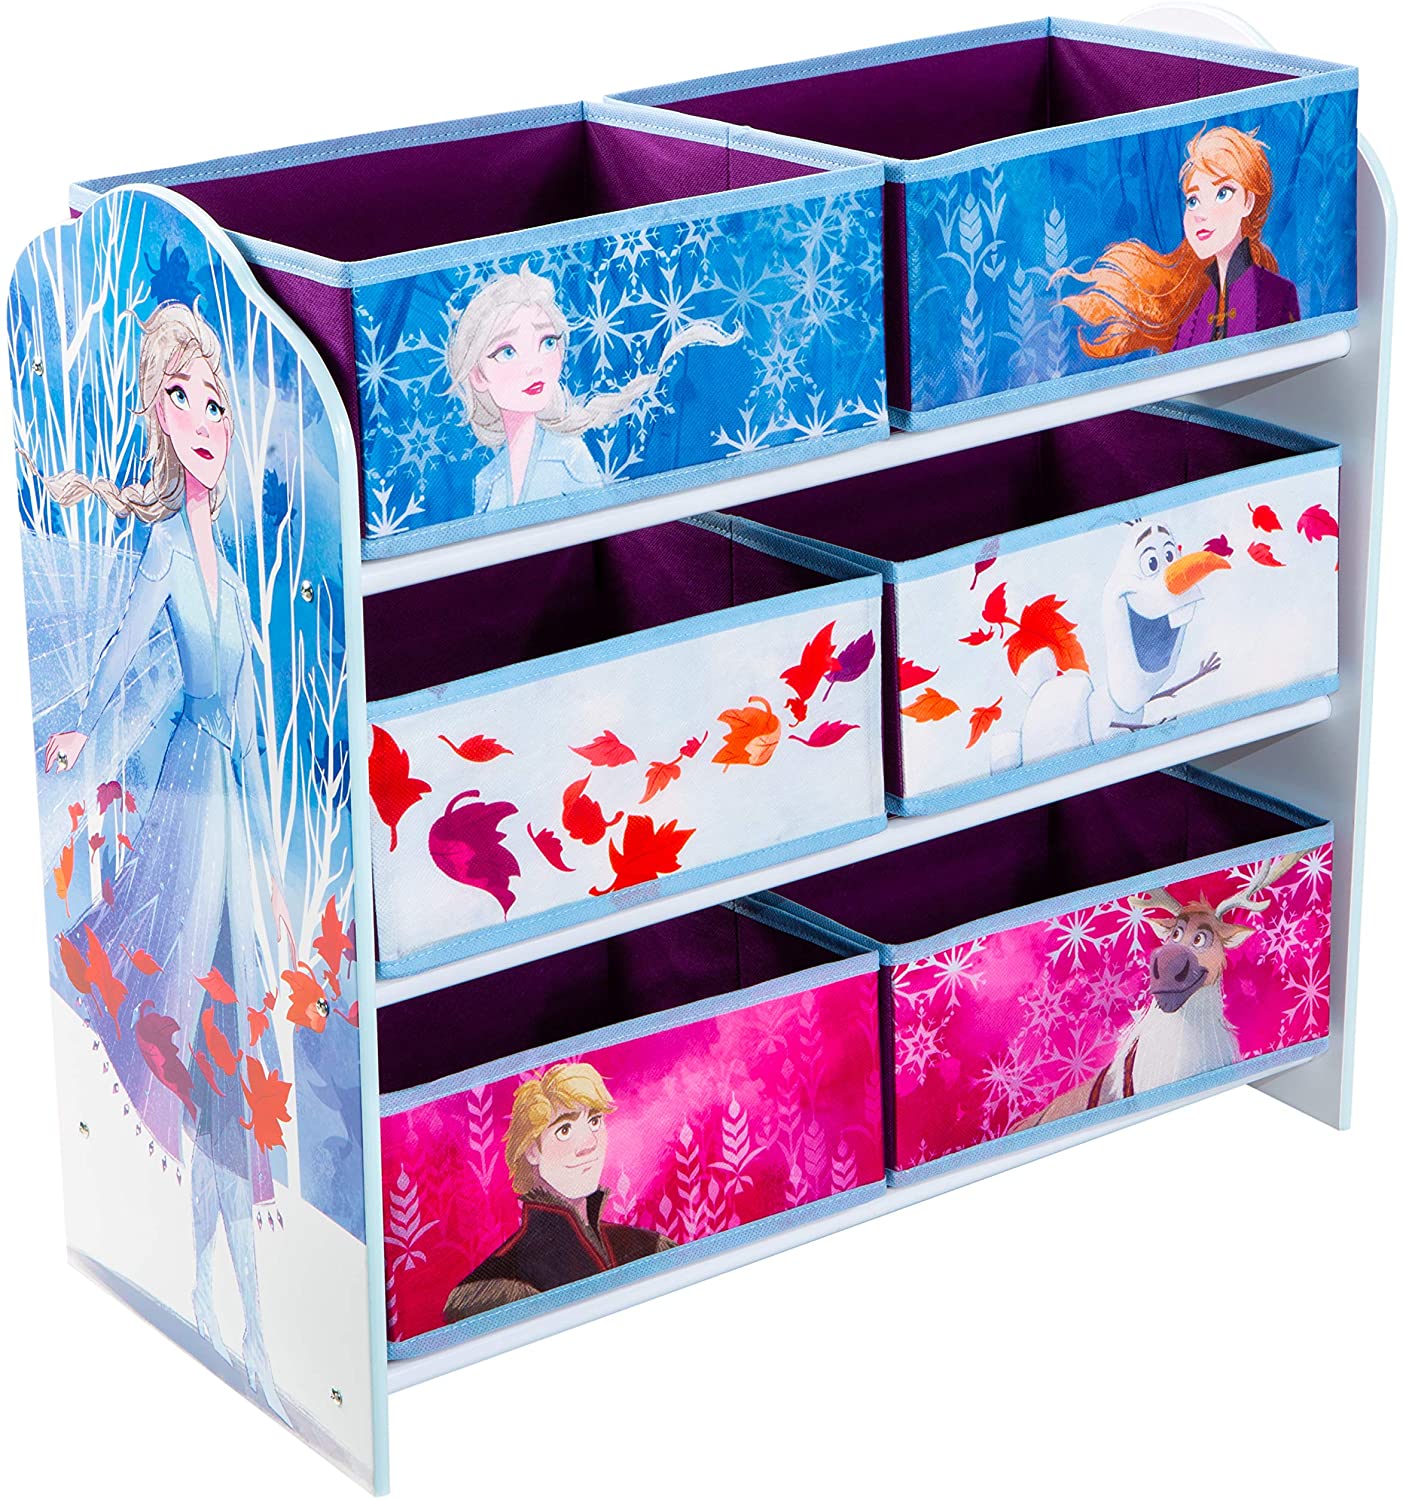 Die Eiskönigin - Regal zur Spielzeugaufbewahrung mit sechs Kisten für Kinder